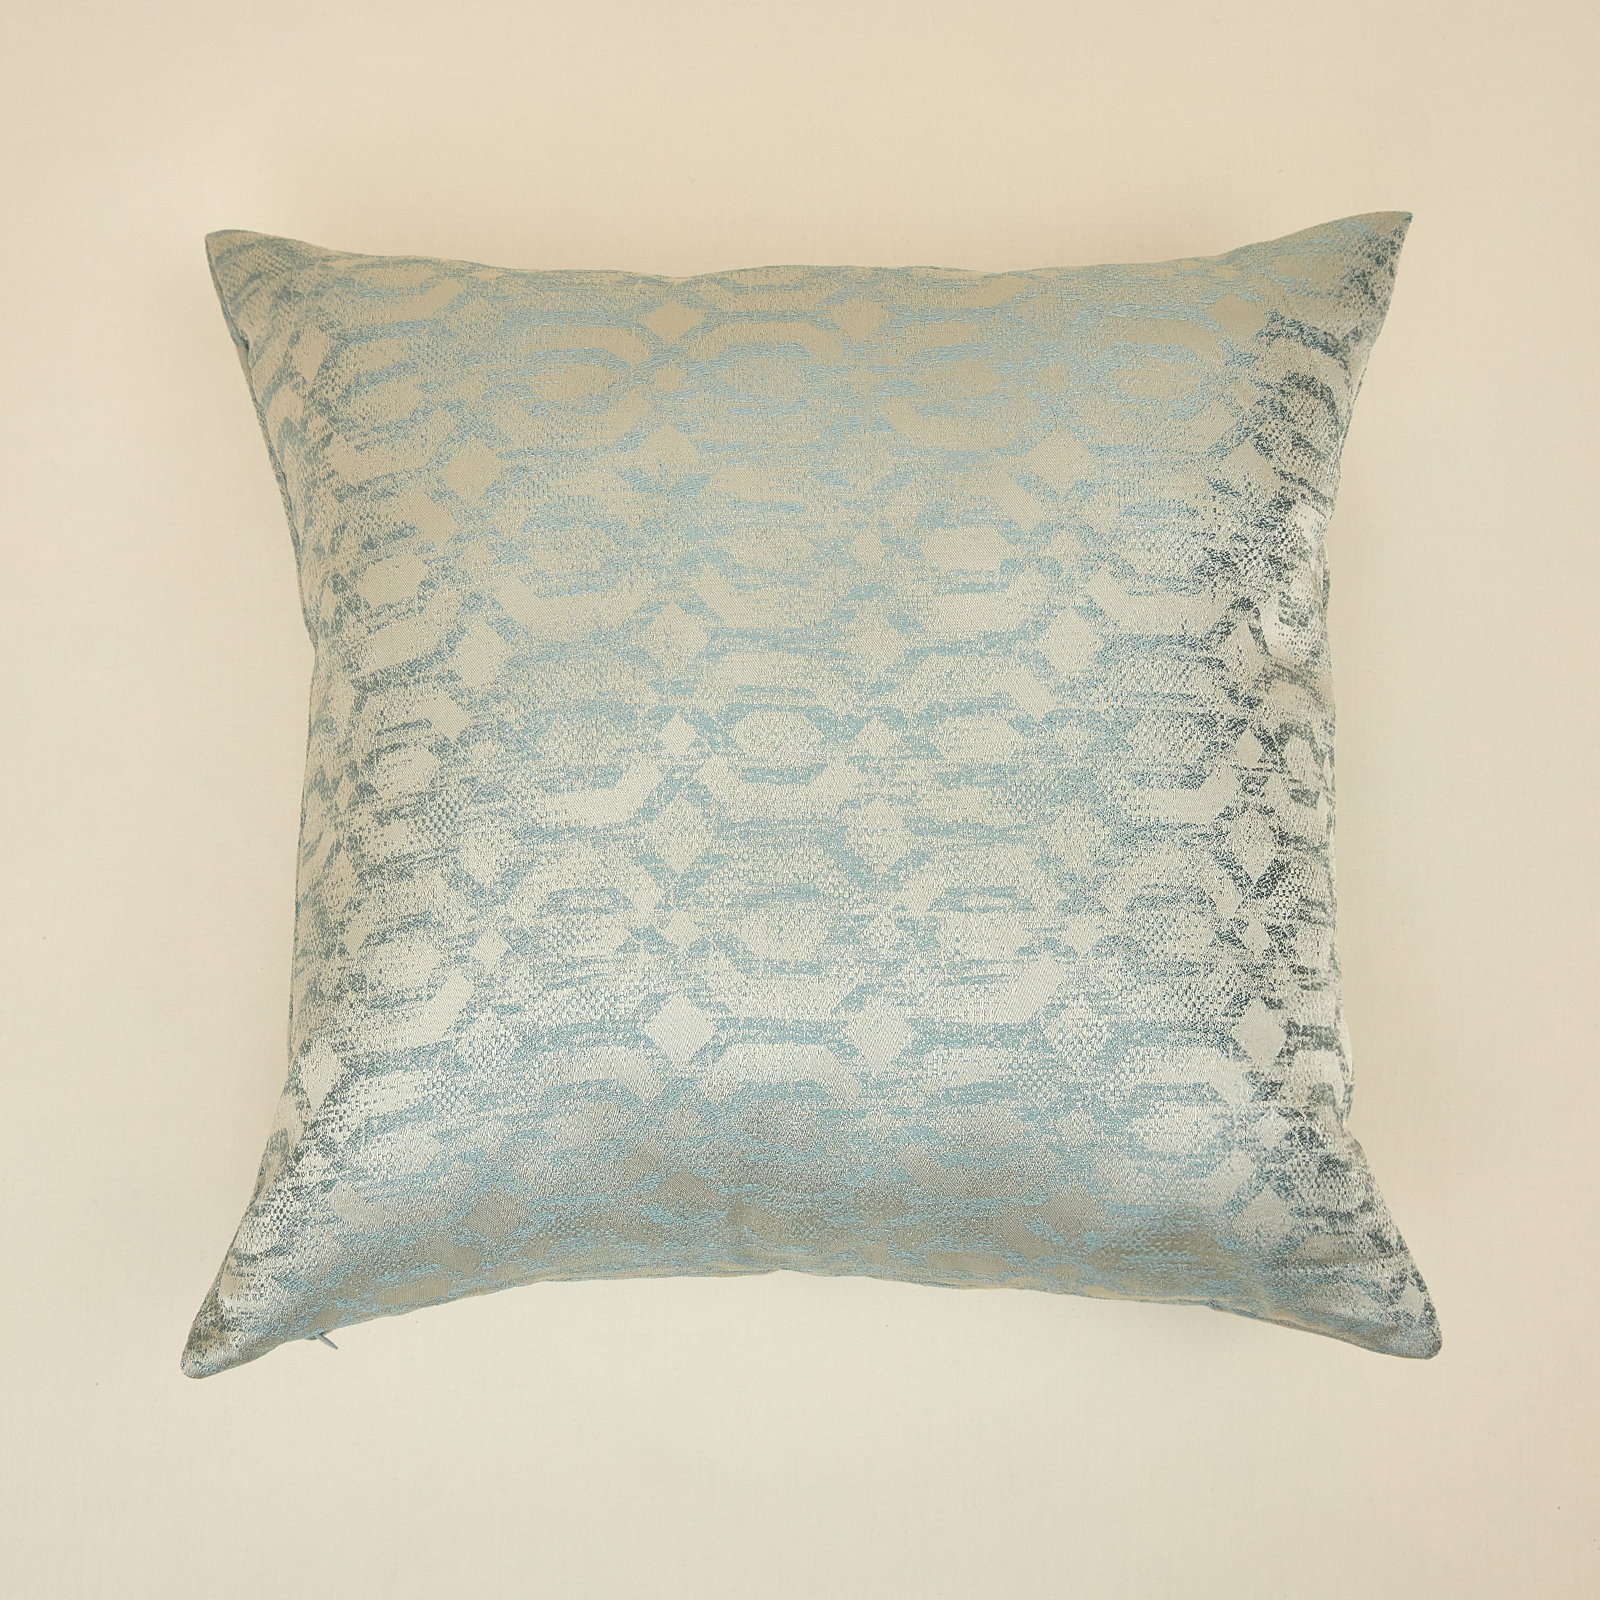 Подушка декоративная Lussuoso, голубая подушка для растяжки голубой